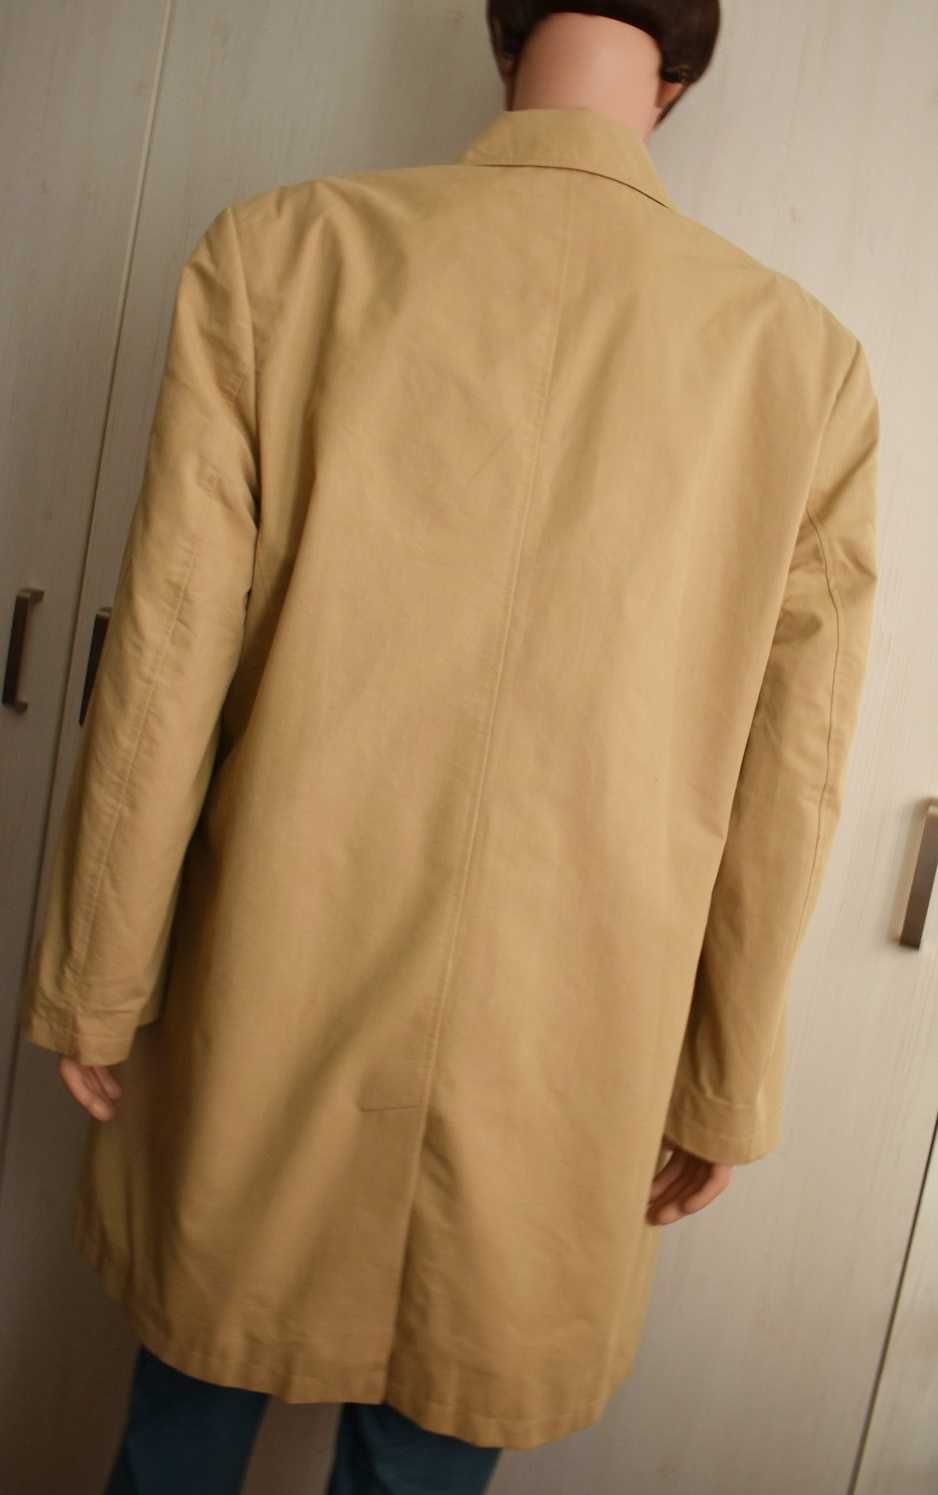 Płaszcz przejściowy XL 54/182 bawełniany trencz wiosenny elegancki